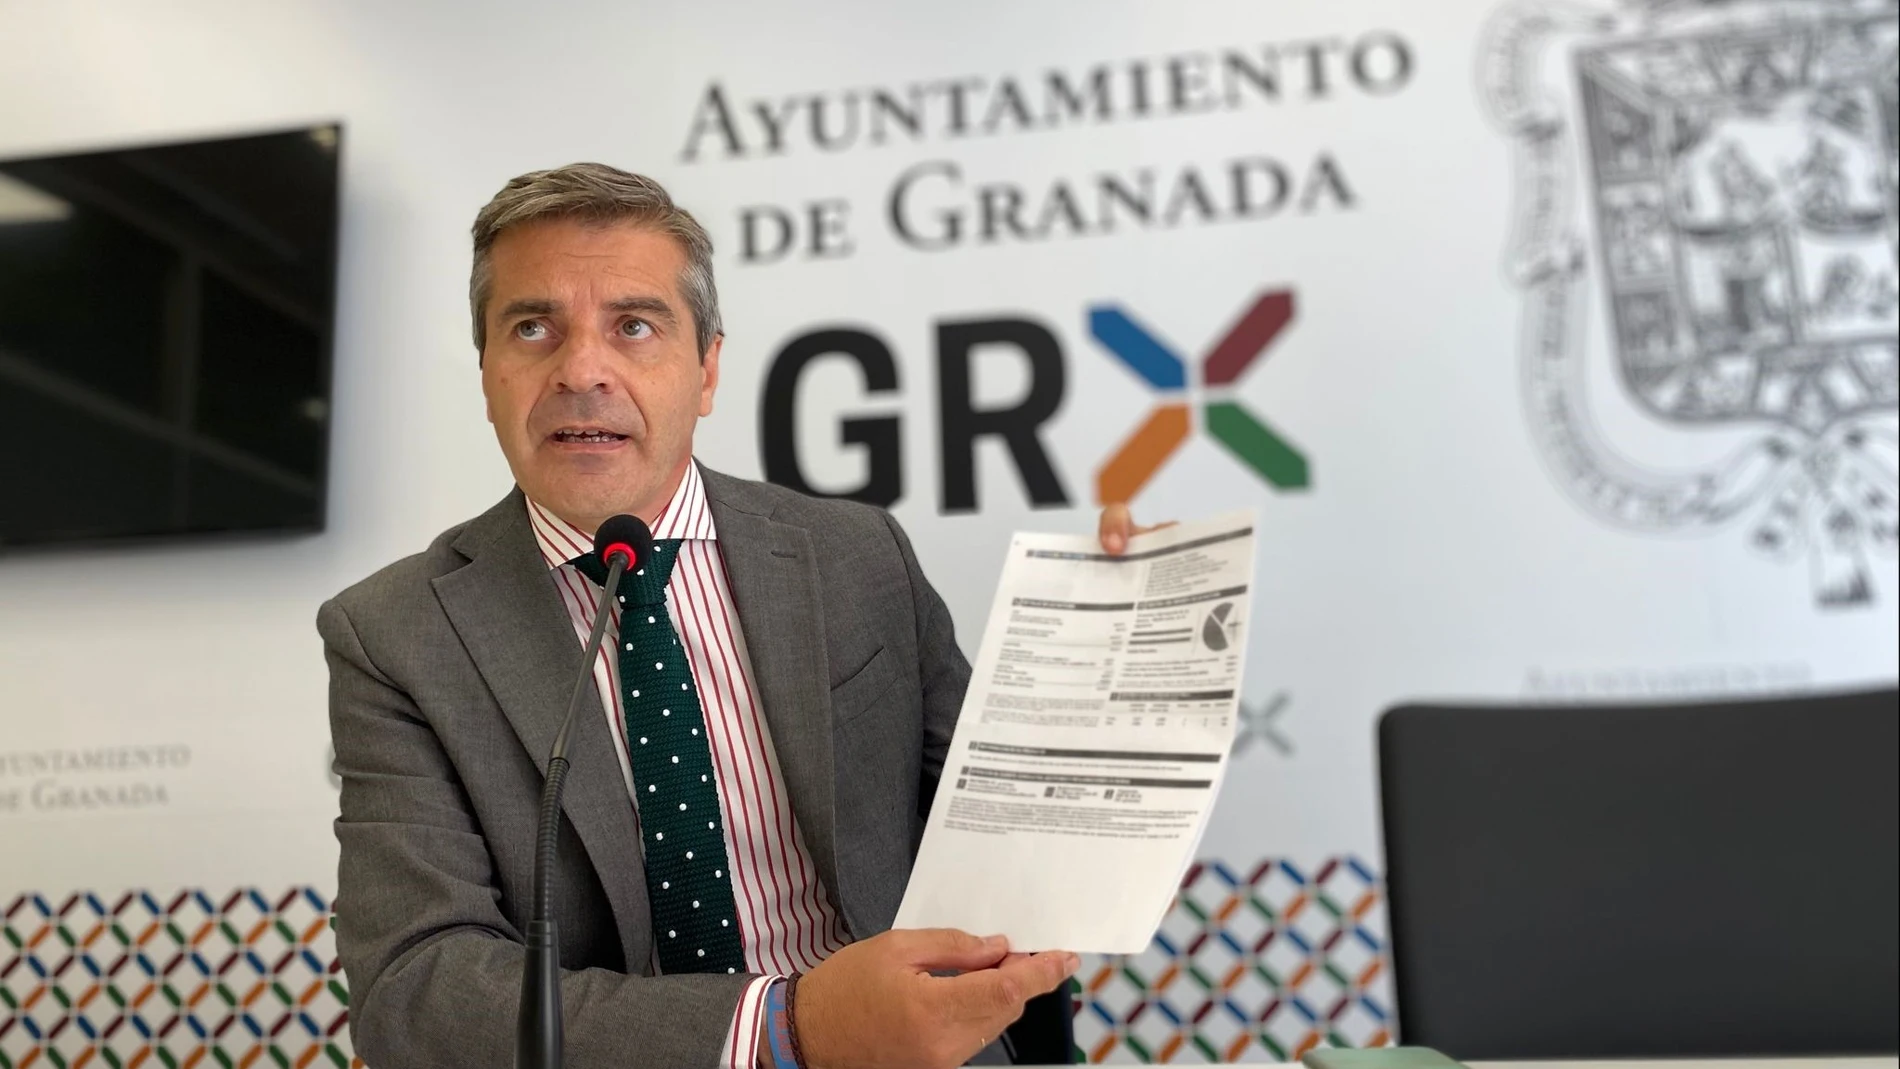 El portavoz del PP en el Ayuntamiento de Granada, César Díaz